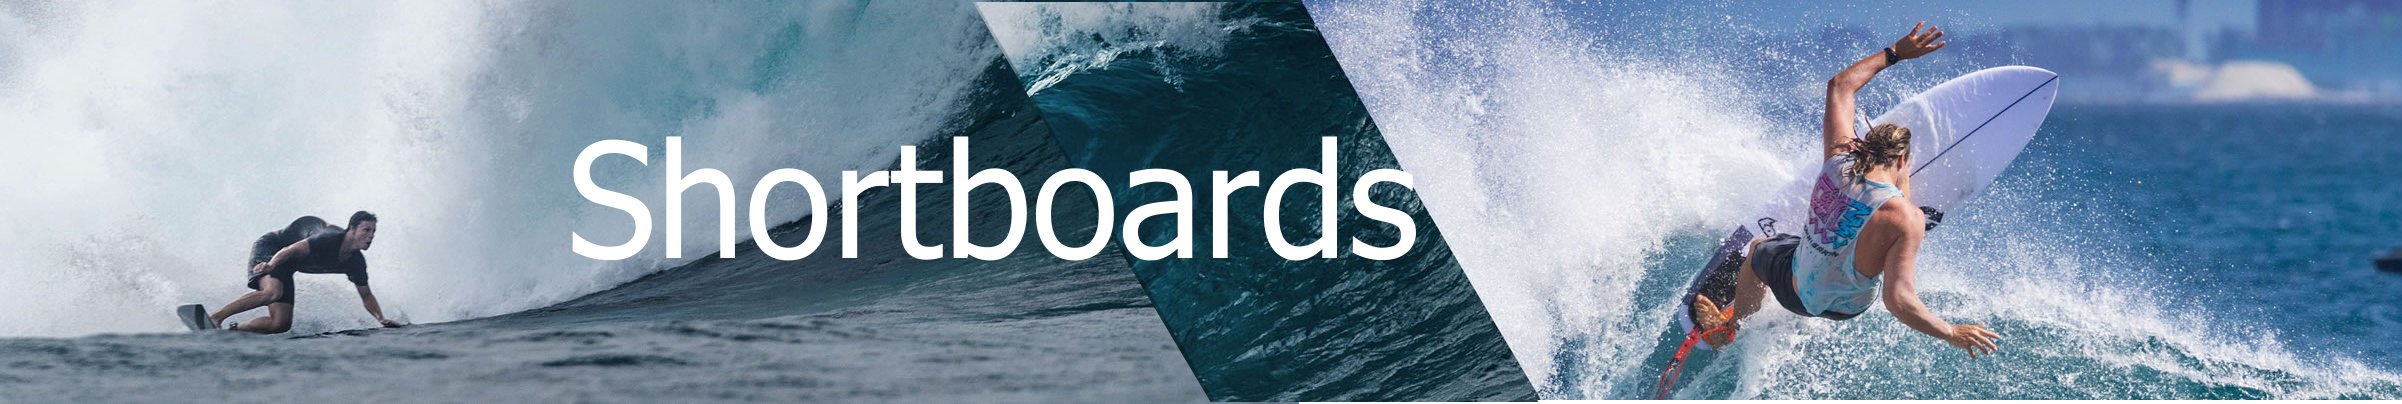 Shortboards online kaufen Deutschland Header